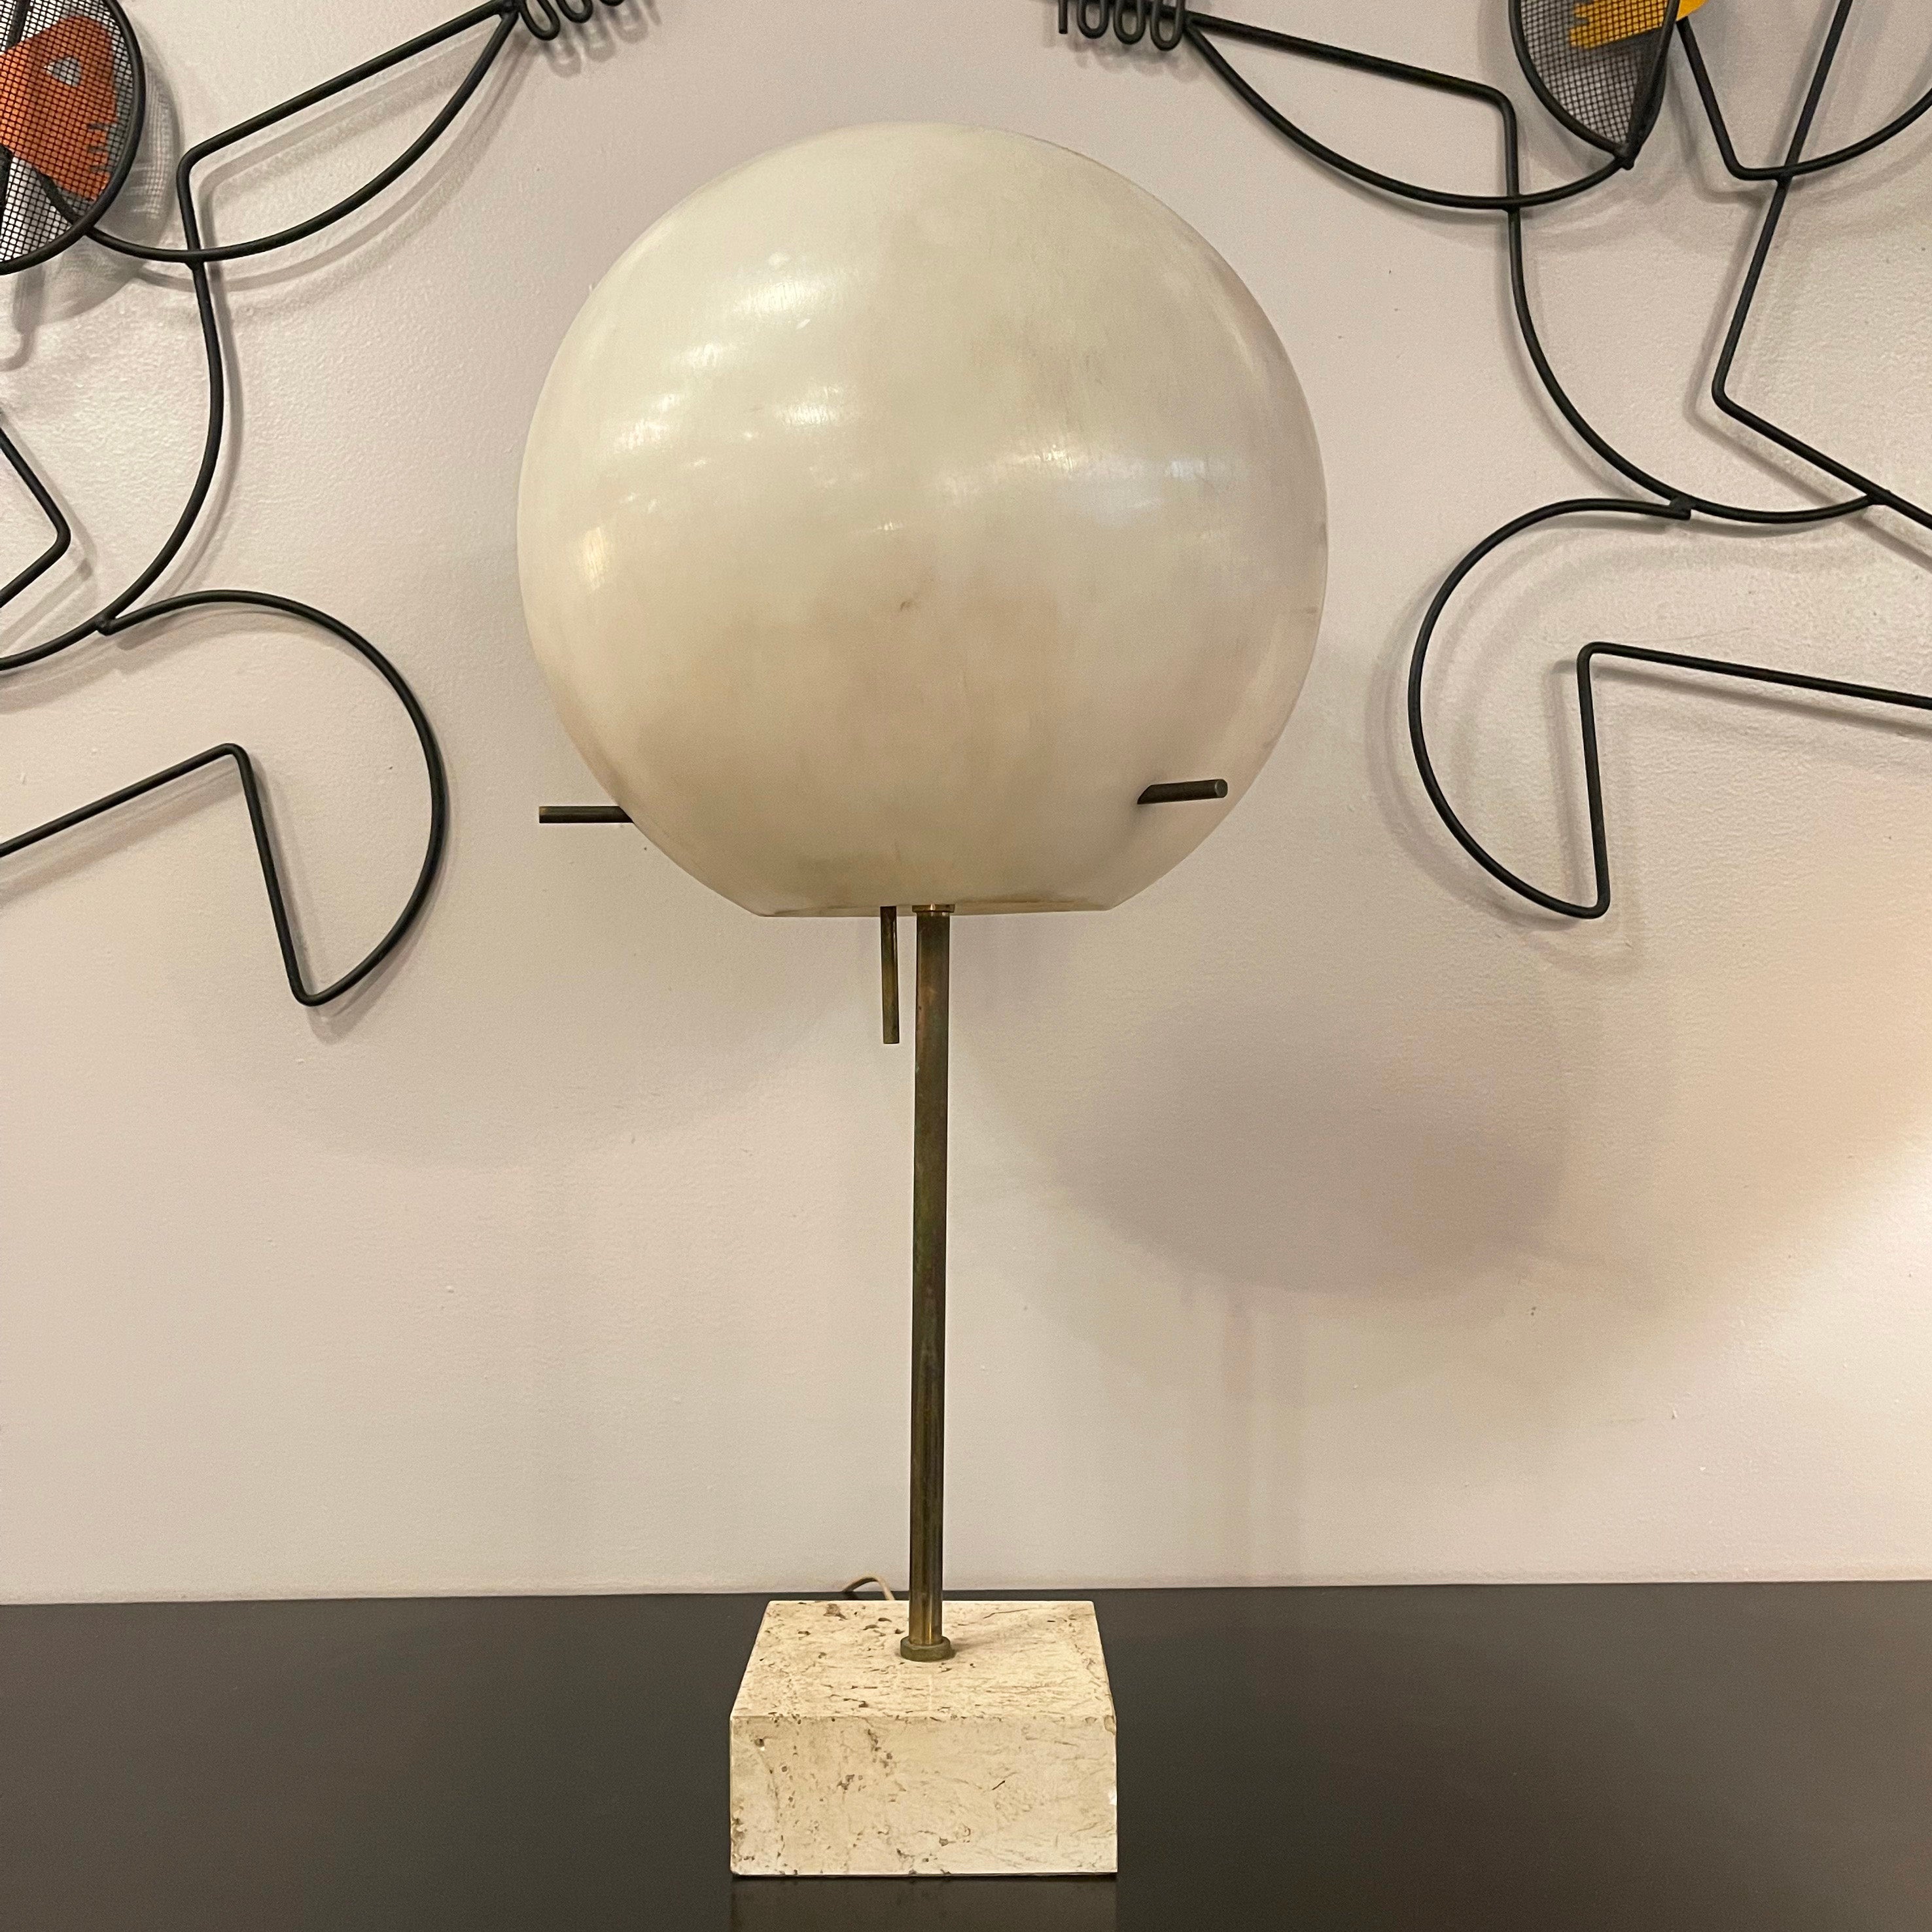 La lampe de table lollipop de Paul Mayen pour Habitat, de style moderniste du milieu du siècle dernier, est composée d'un abat-jour globe en polypropylène épais et d'une tige en laiton patiné sur une base carrée en travertin de 5,25 pouces.